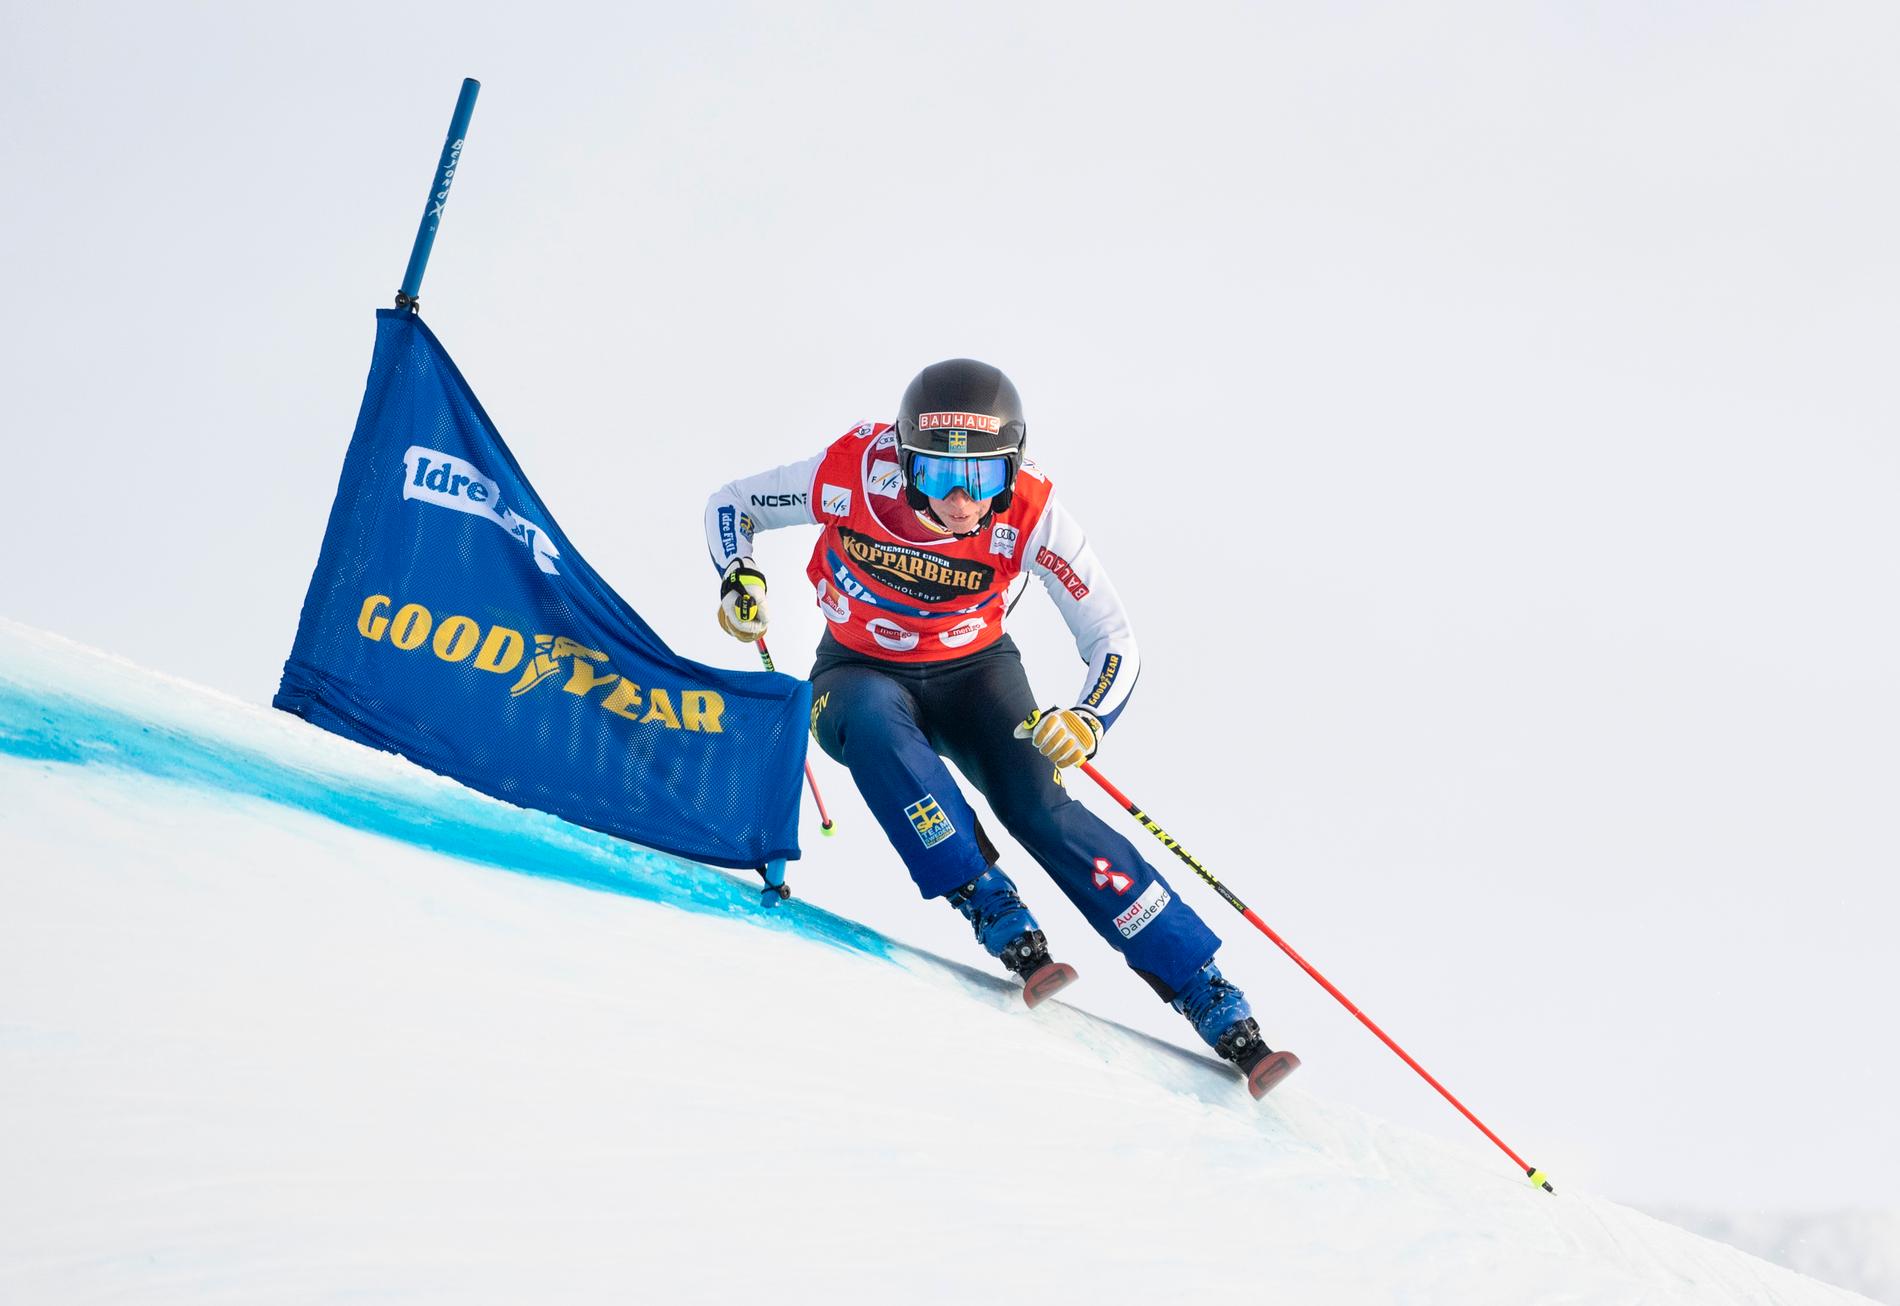 Världscupvinnaren i skicross, Sandra Näslund. Arkivbild.